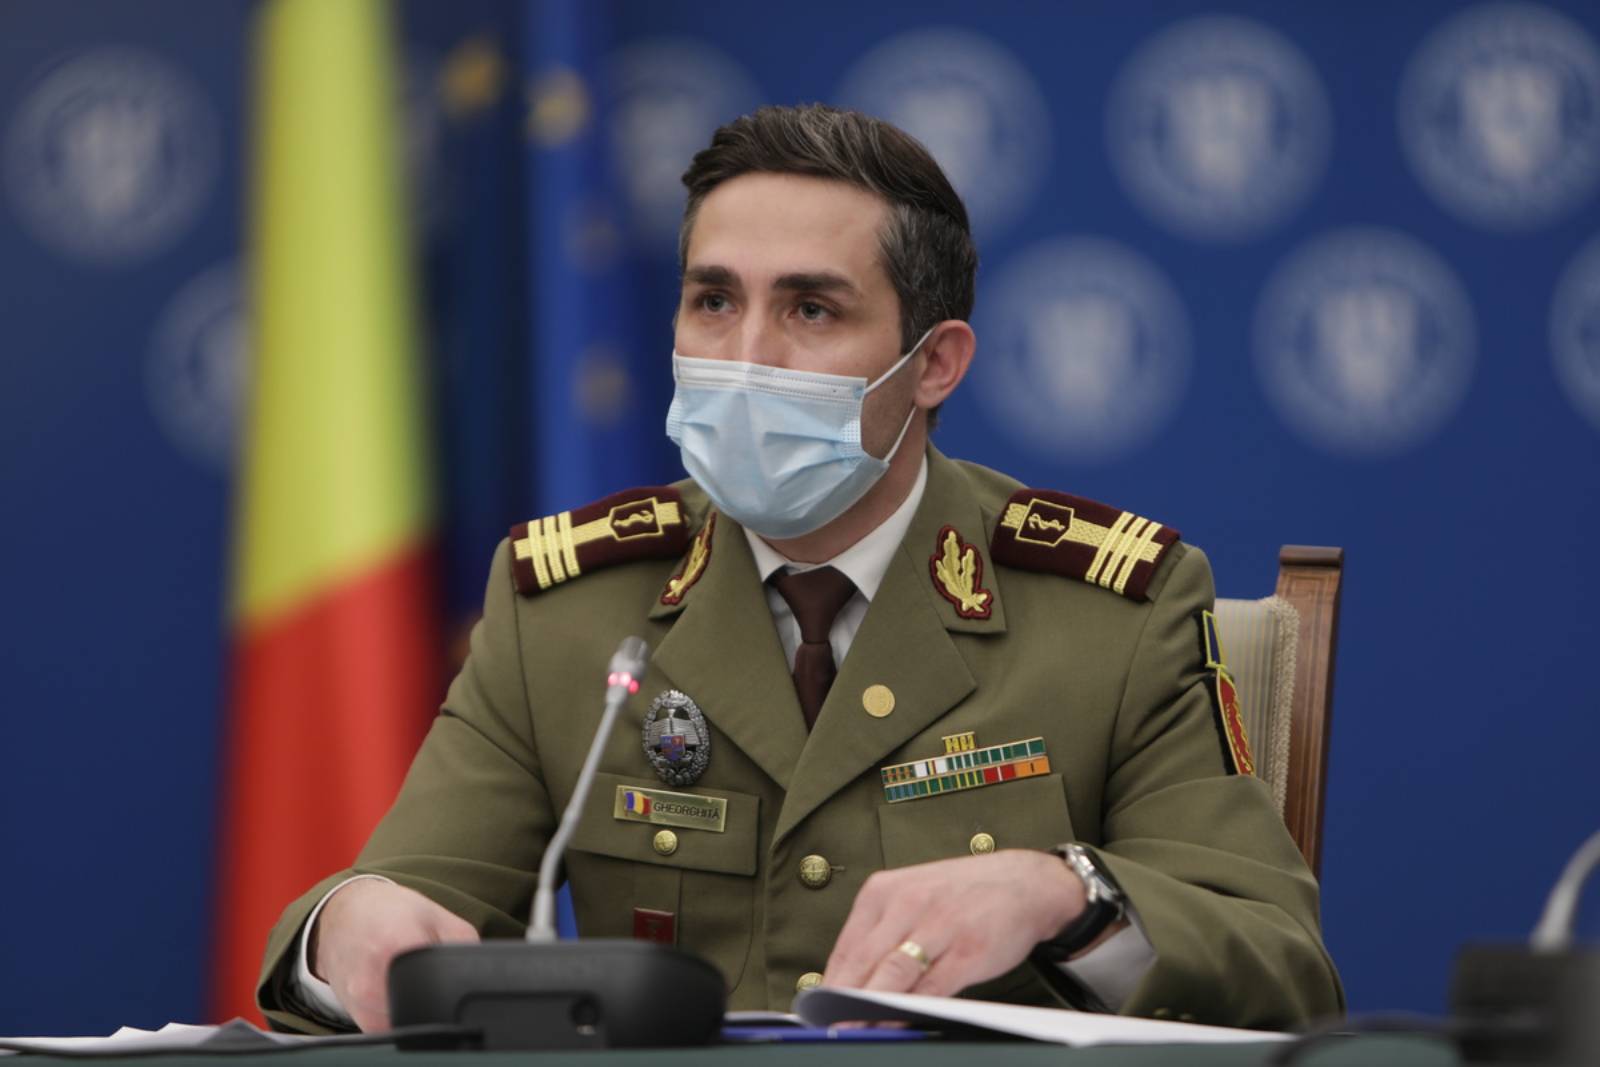 Valeriu Gheorghita Det næste Vaccinationsmarathon i Bukarest, Frygt for Rumænerne